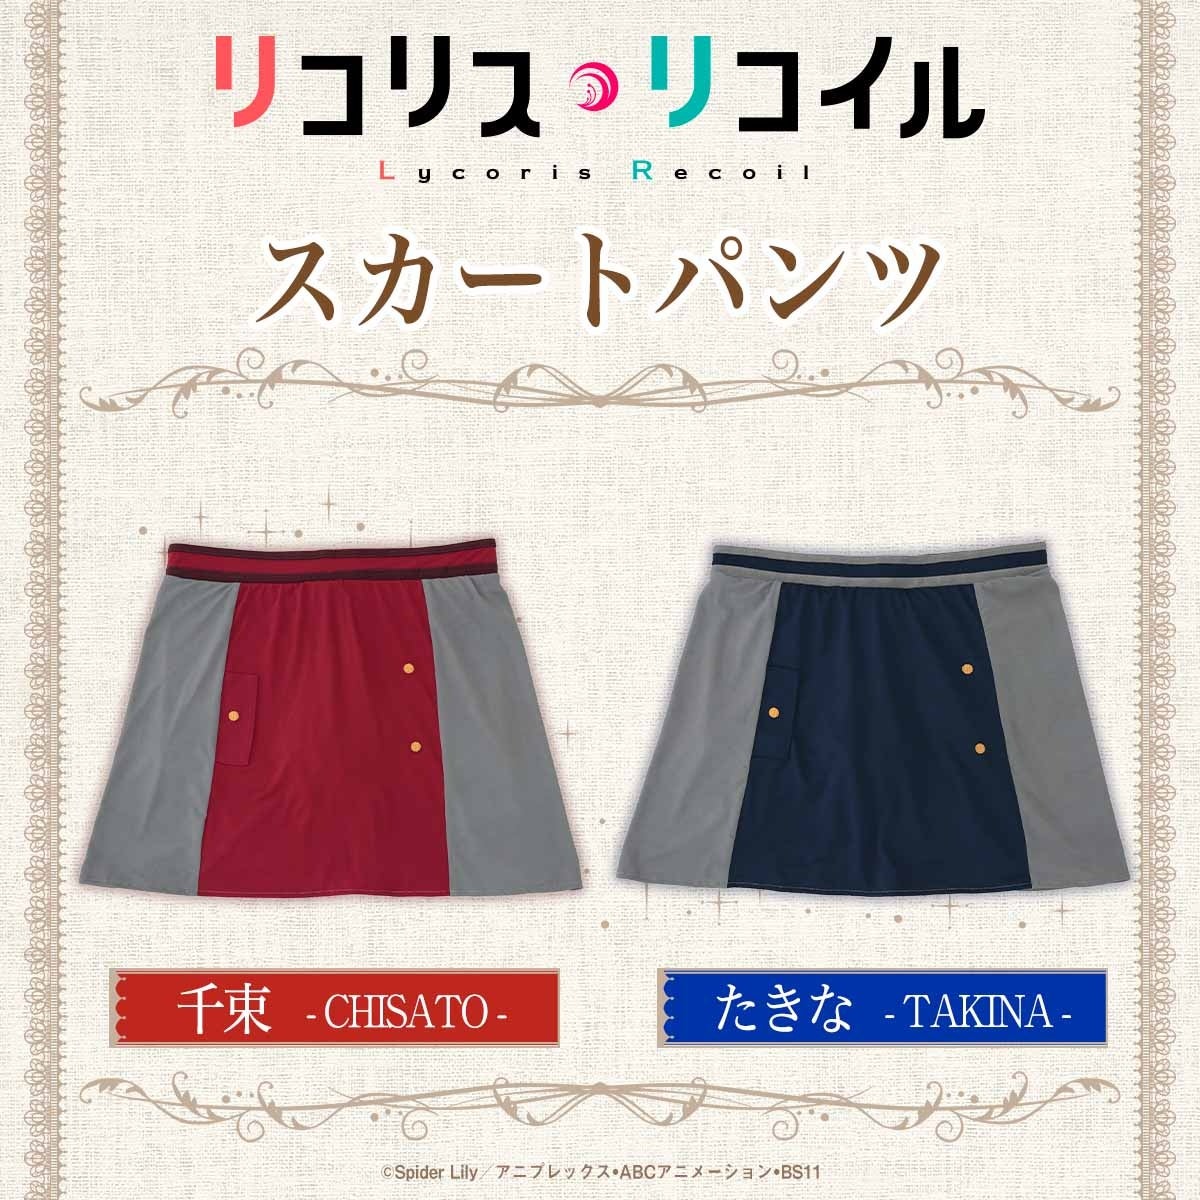 TVアニメ『リコリス・リコイル』より、千束とたきなが着用しているリコリス制服をモチーフにしたおやすみ用ブラとスカートパンツが登場！